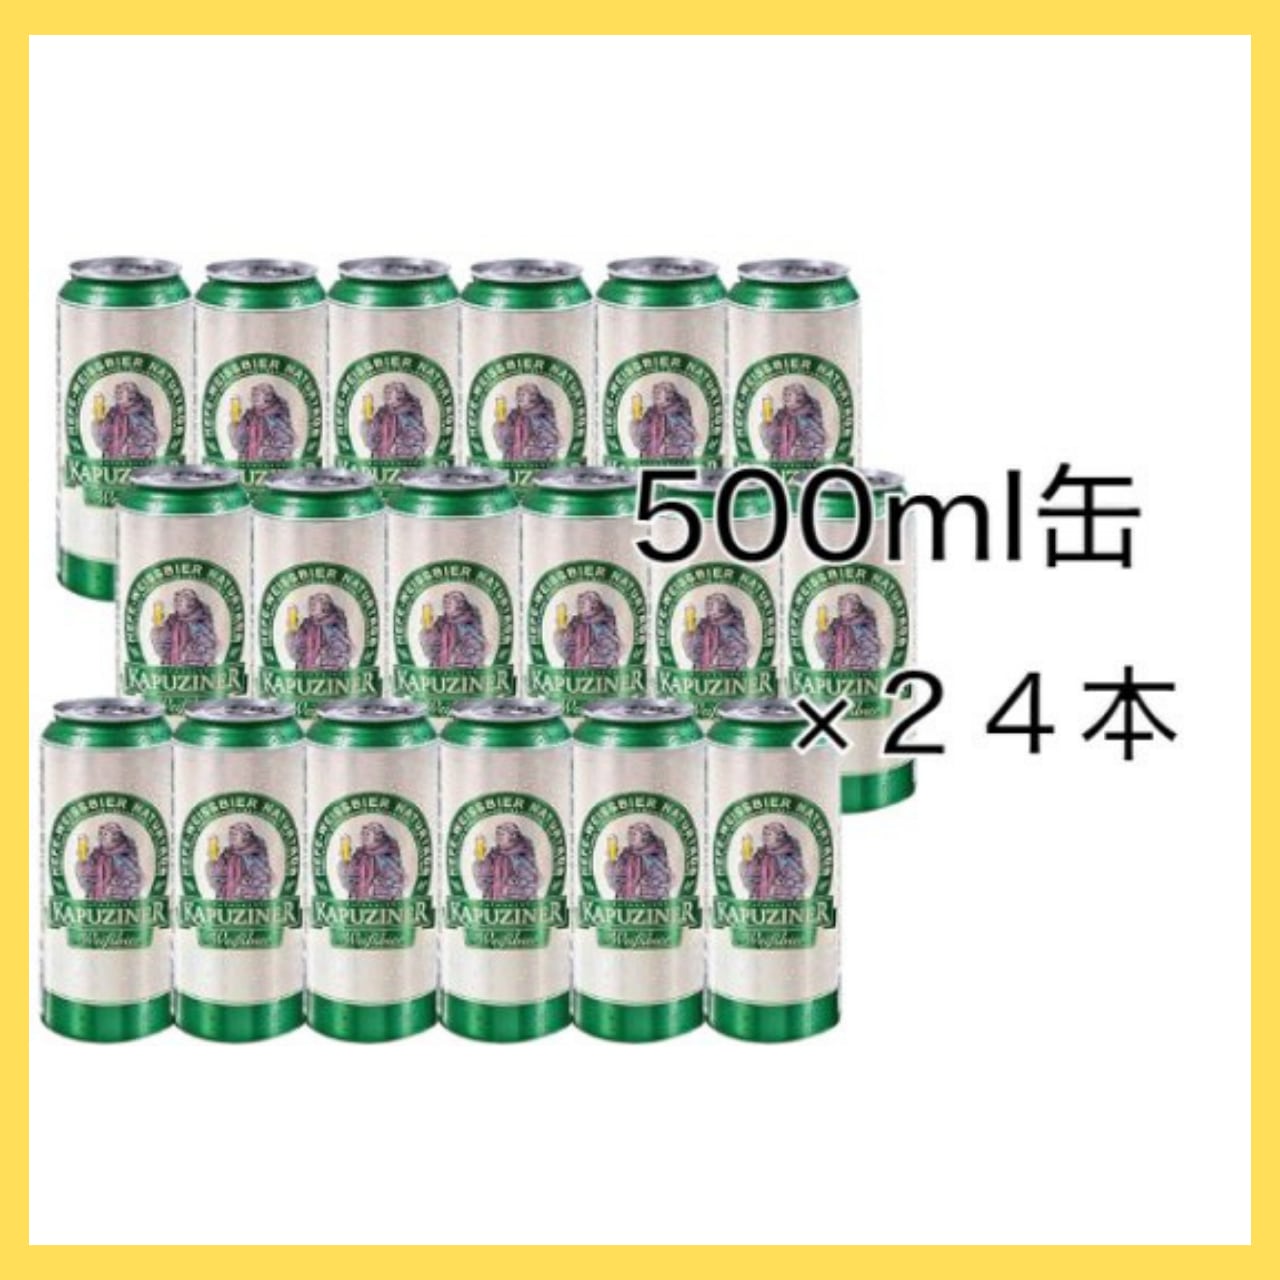 本格ドイツビール カプツィーナ ヴァイツェン 500ml缶 24本セット(1ケース) | ワコマ【ワインコミュニケーターマーケット】